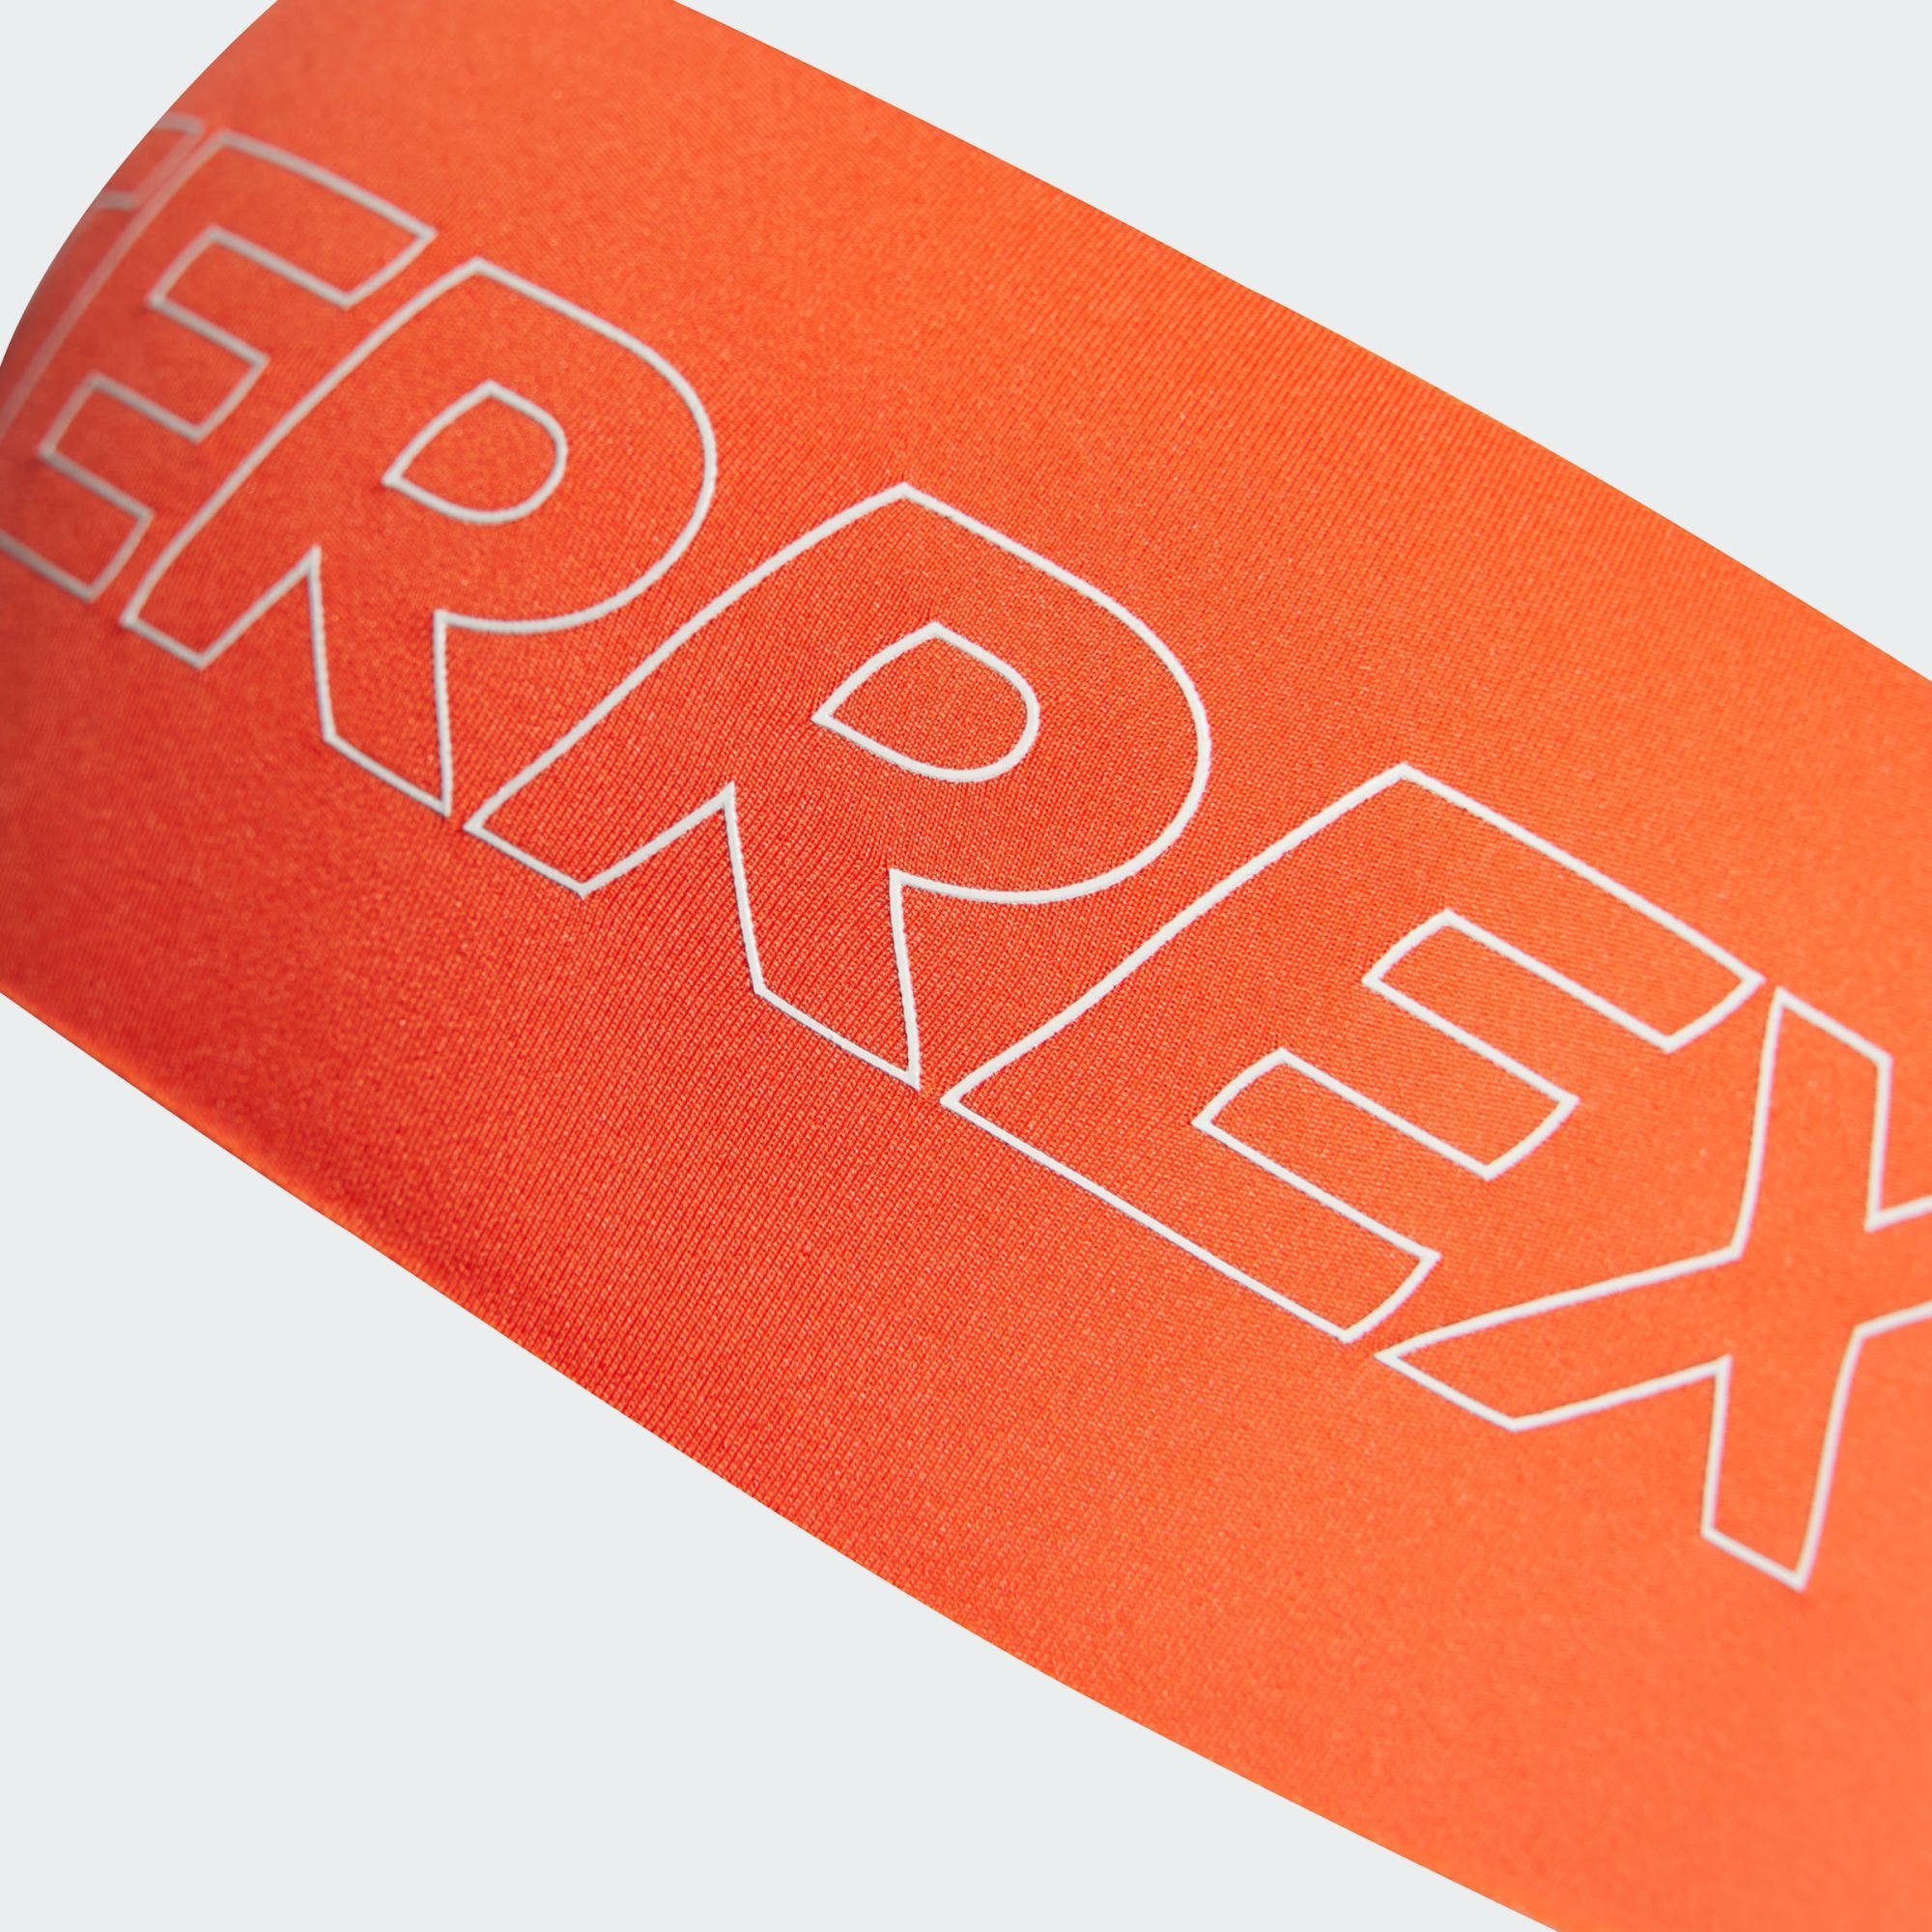 Stirnband Semi TERREX STIRNBAND Impact TERREX / White adidas AEROREADY Orange